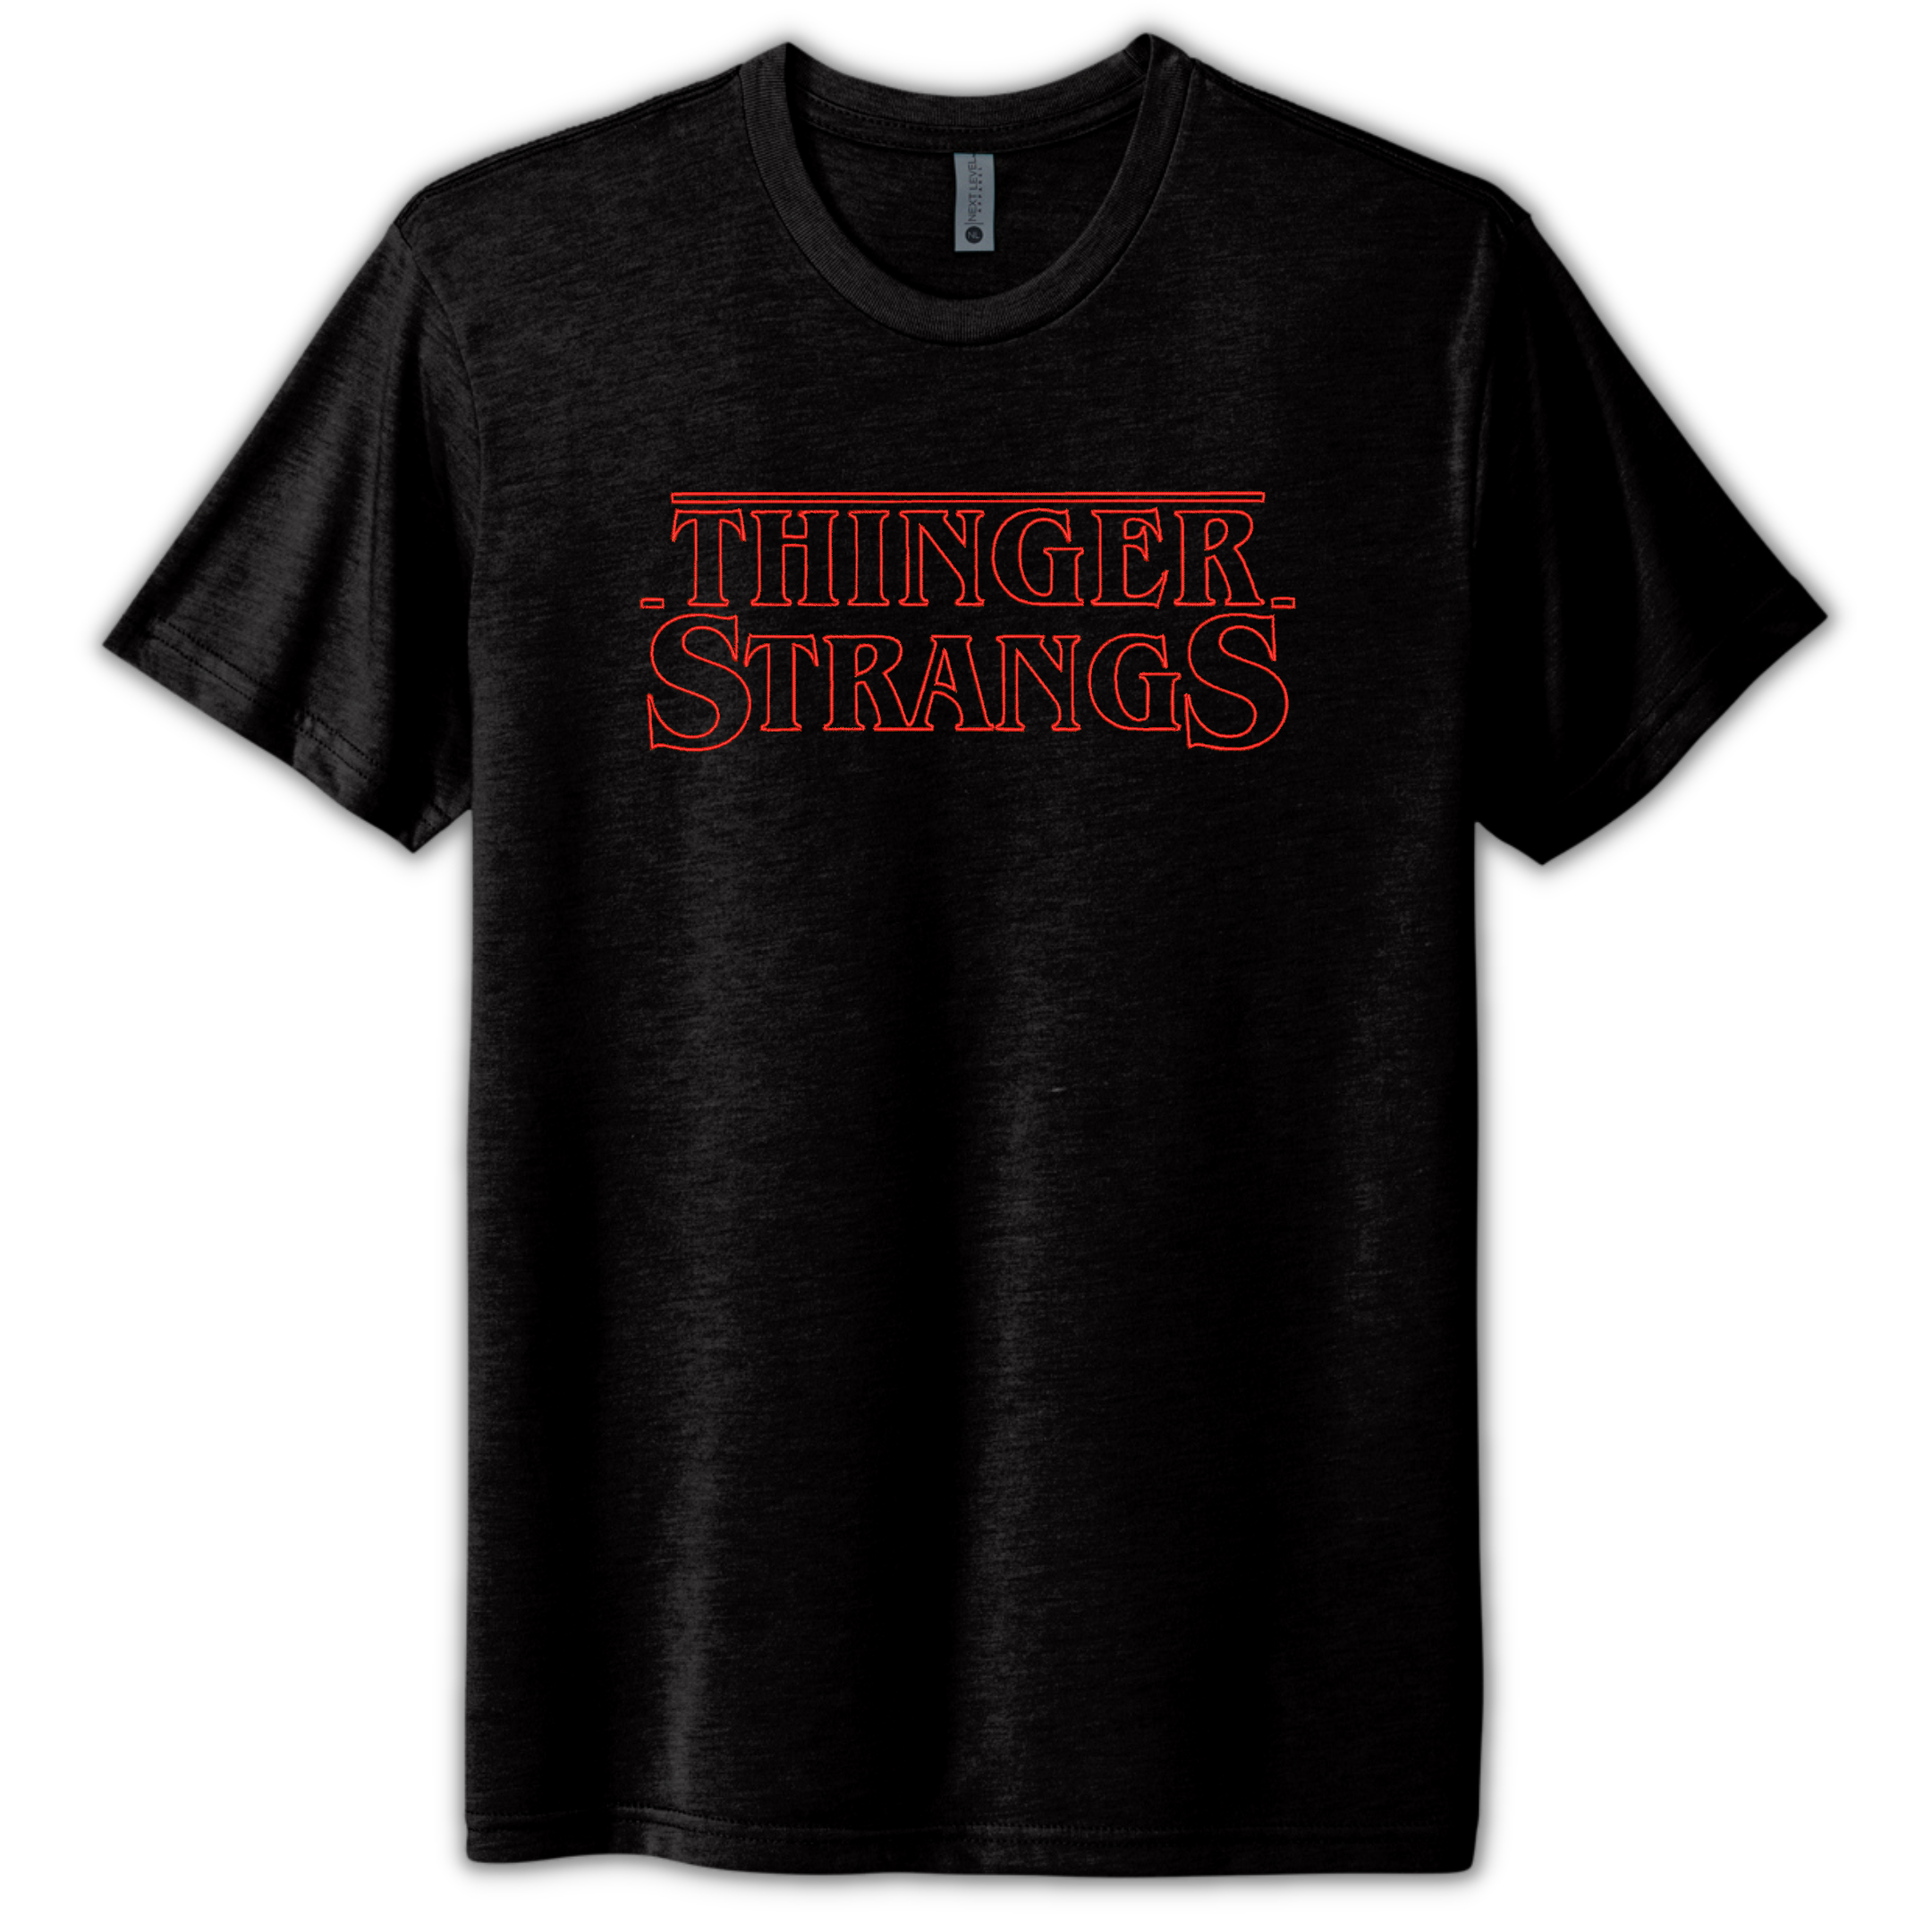 Thinger Strangs - Stranger Things Inspired Embroidered Black Tee Shirt, Unisex